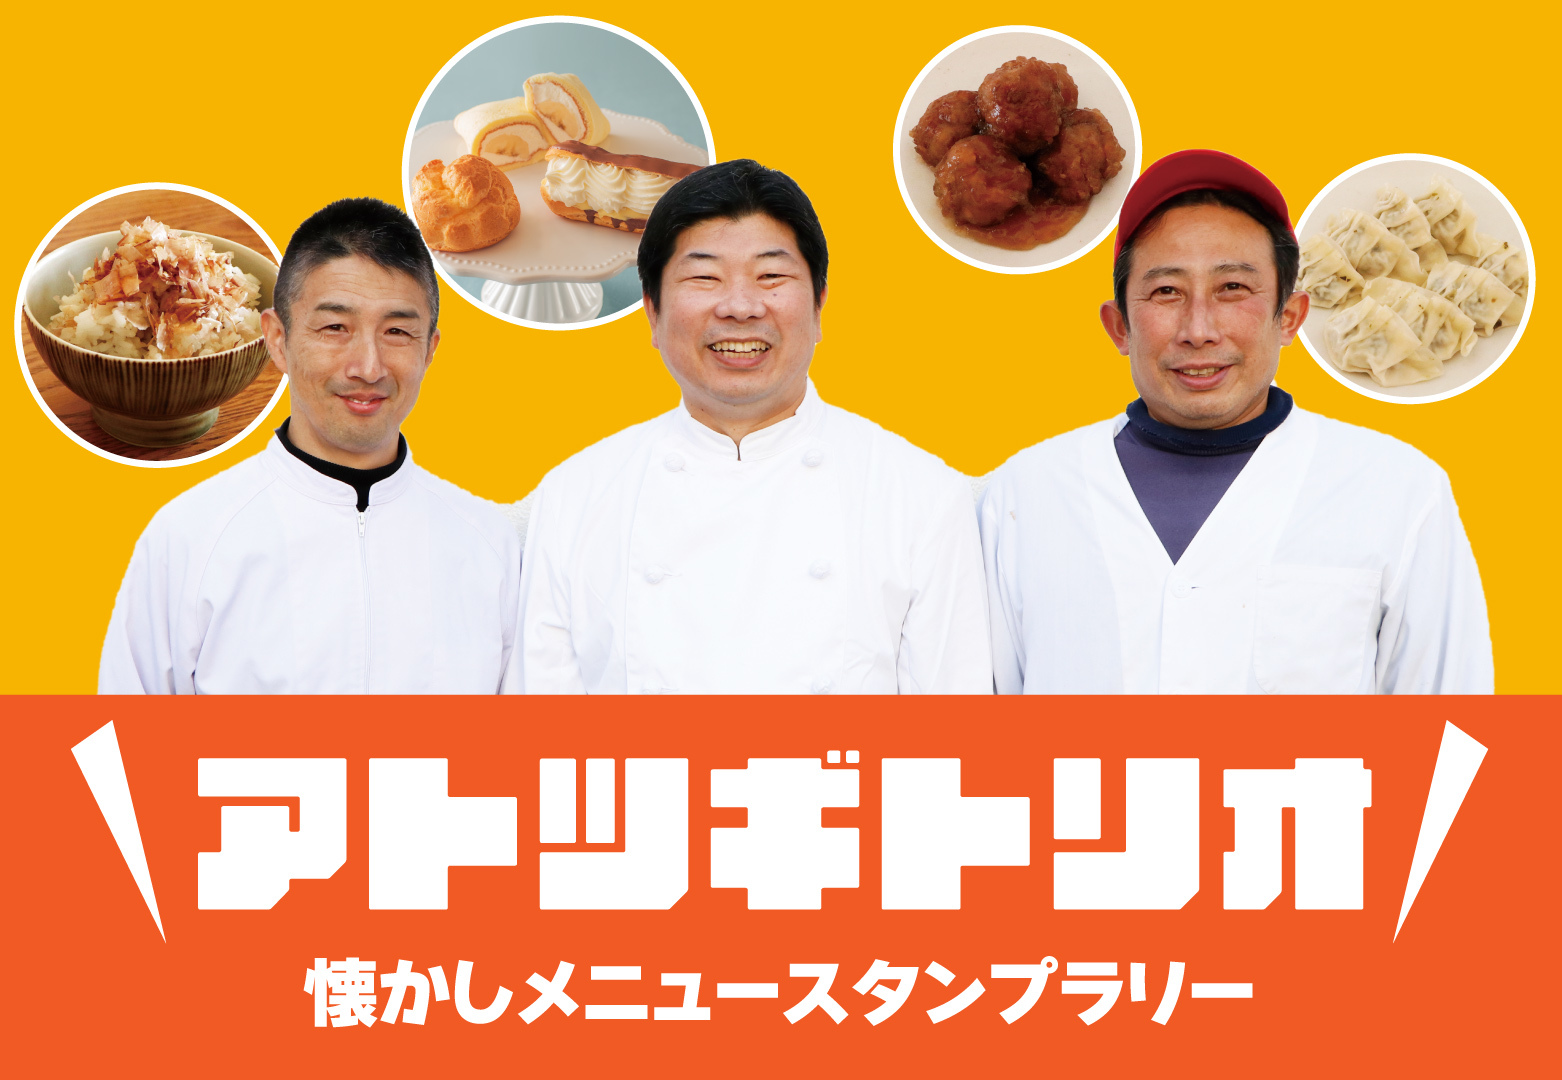 毎日50人以上行列をつくるあの「人類みな麺類」が
ついにうどん業態に着手！1月28日(土)大阪西中島に
「人類みな饂飩酒場」グランドオープン